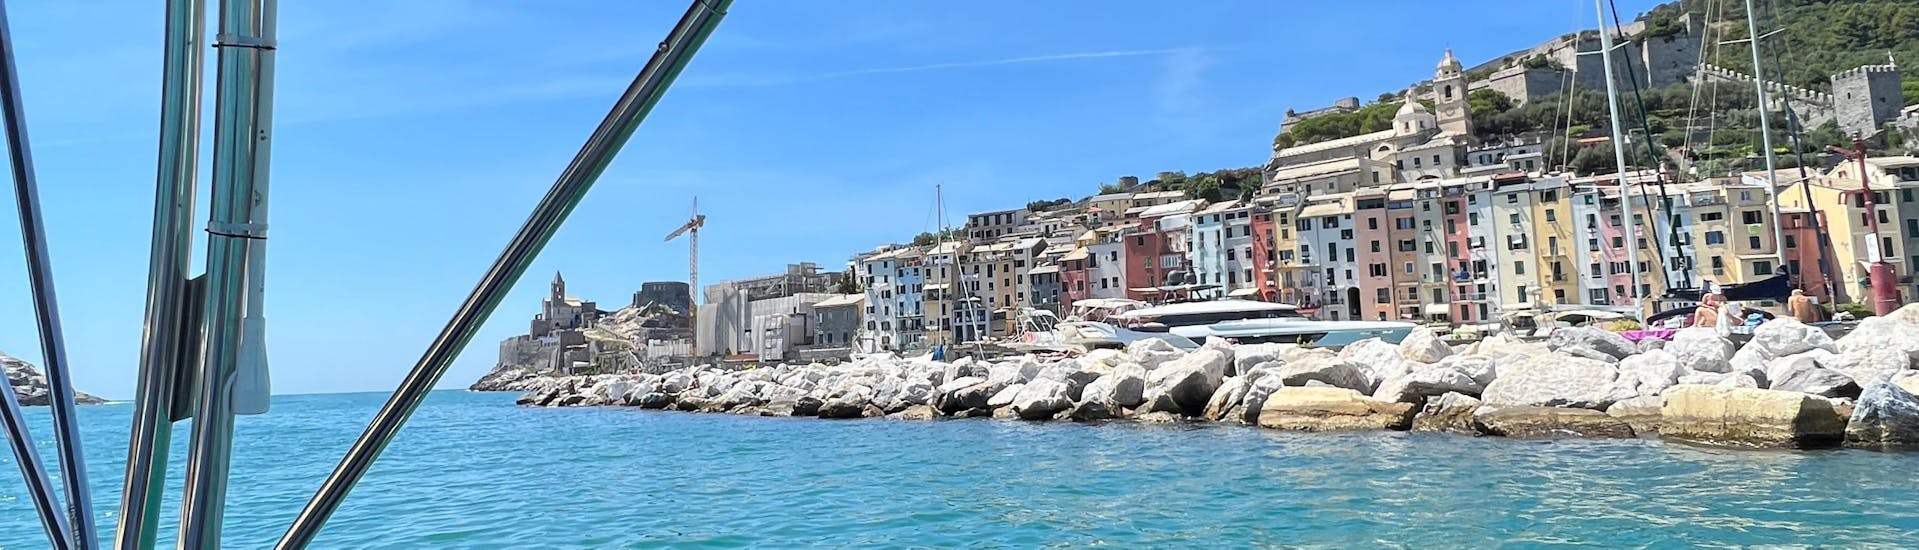 La vista che avrete durante la Gita in barca da La Spezia con stop a Monterosso o Vernazza e soste per nuotare con Maestrale Boat Tour Cinque Terre.